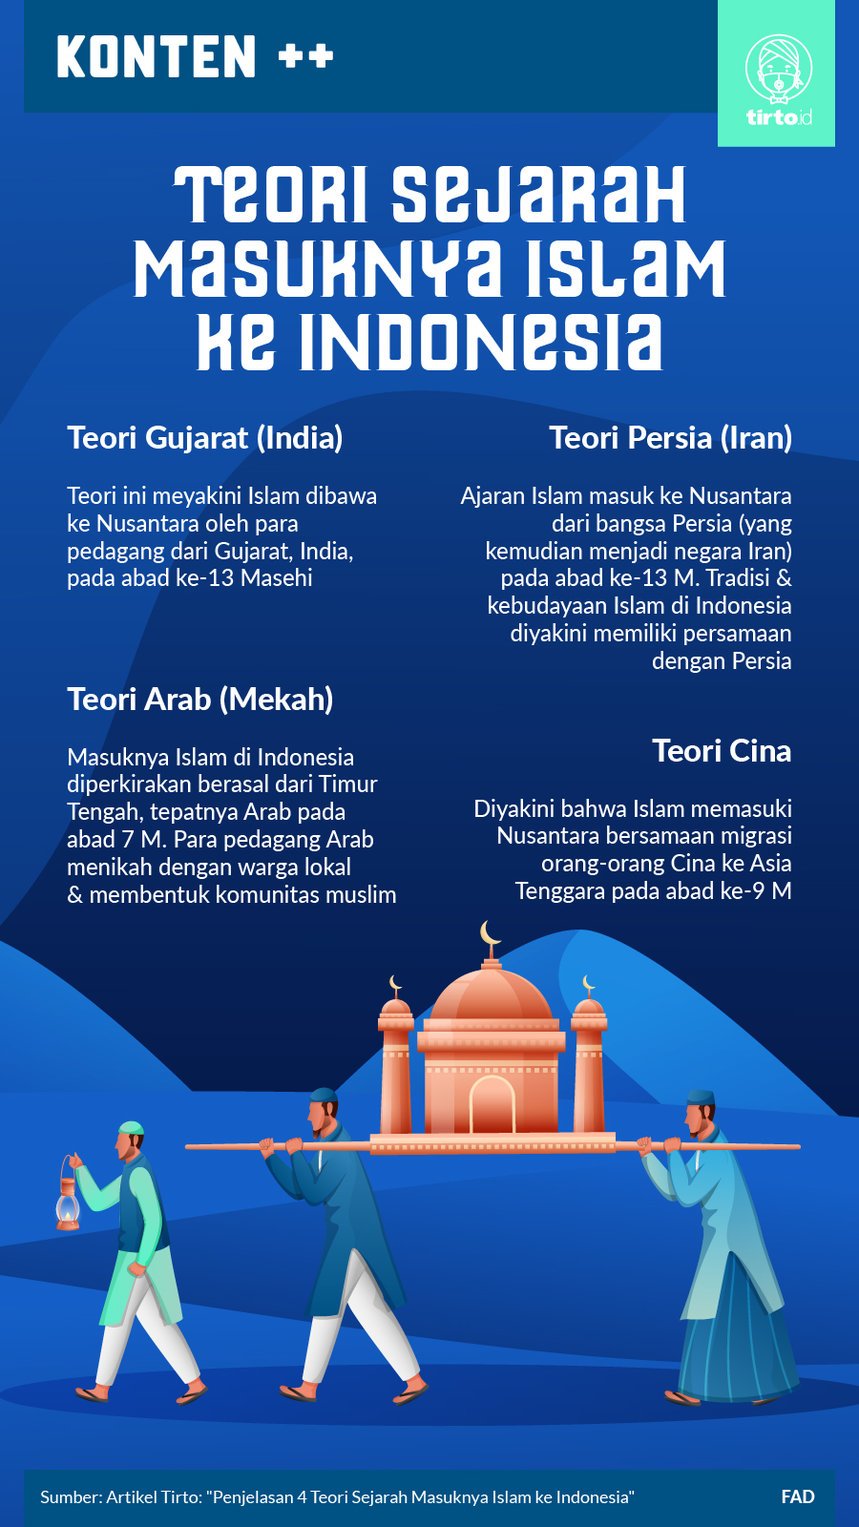 Yang merupakan pengaruh masuknya budaya india bagi perkembangan budaya di indonesia adalah pada nomor